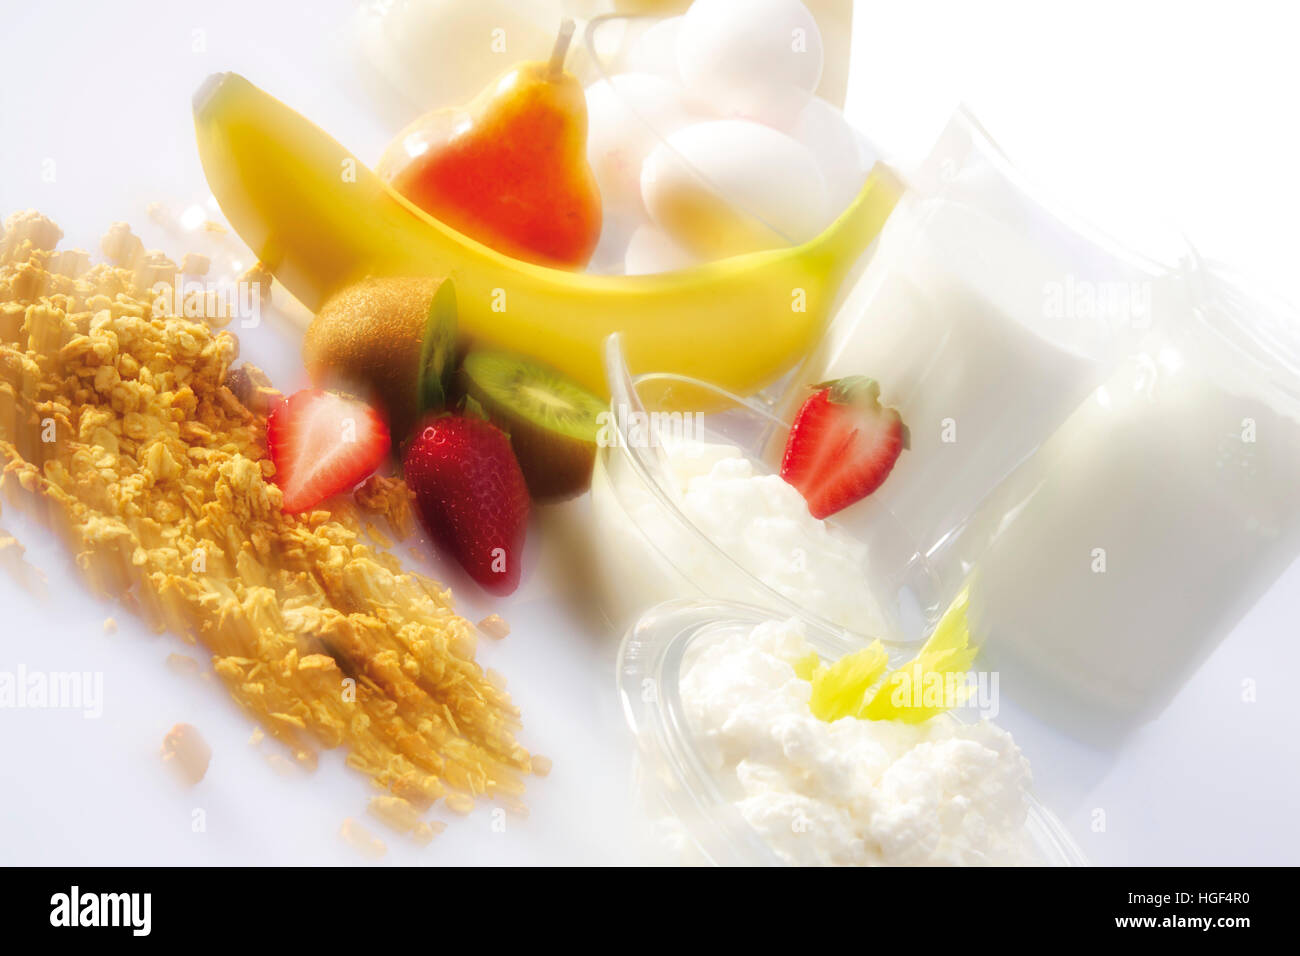 Une saine breadkfast : lait, fromage, yaourts, céréales et fruits Banque D'Images